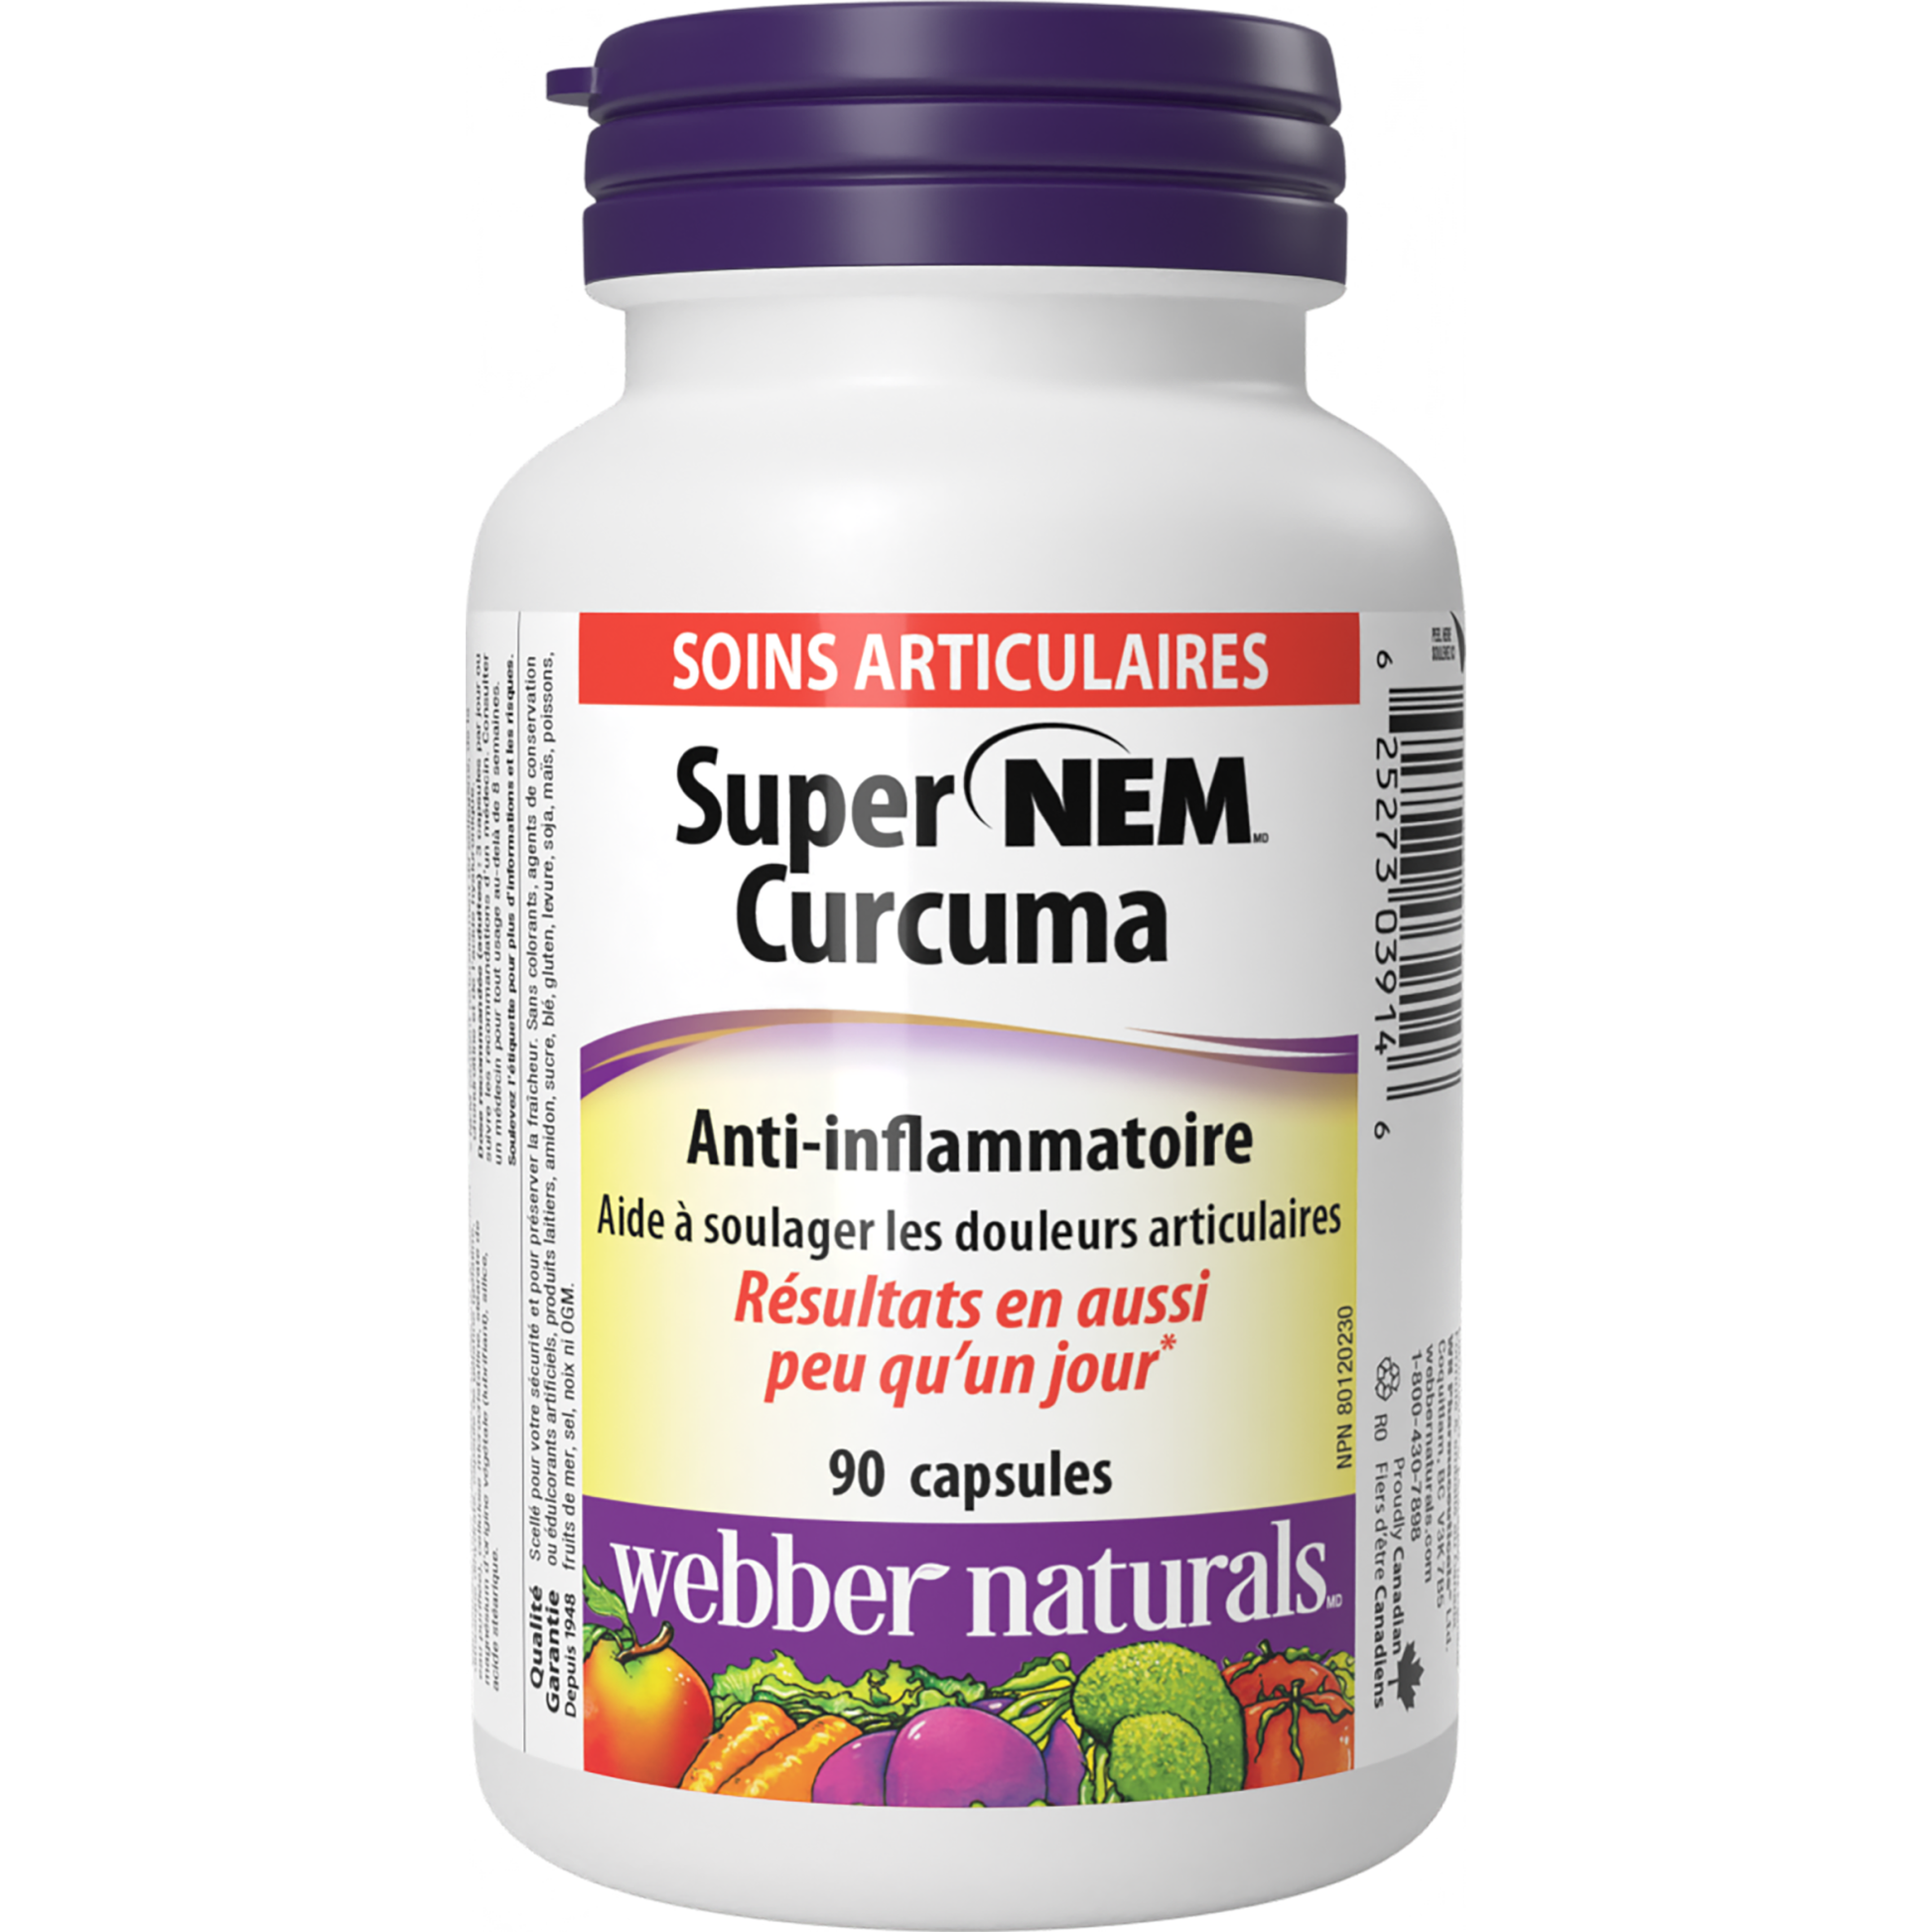 Super NEM(MD) Curcuma for Webber Naturals|v|hi-res|WN3914